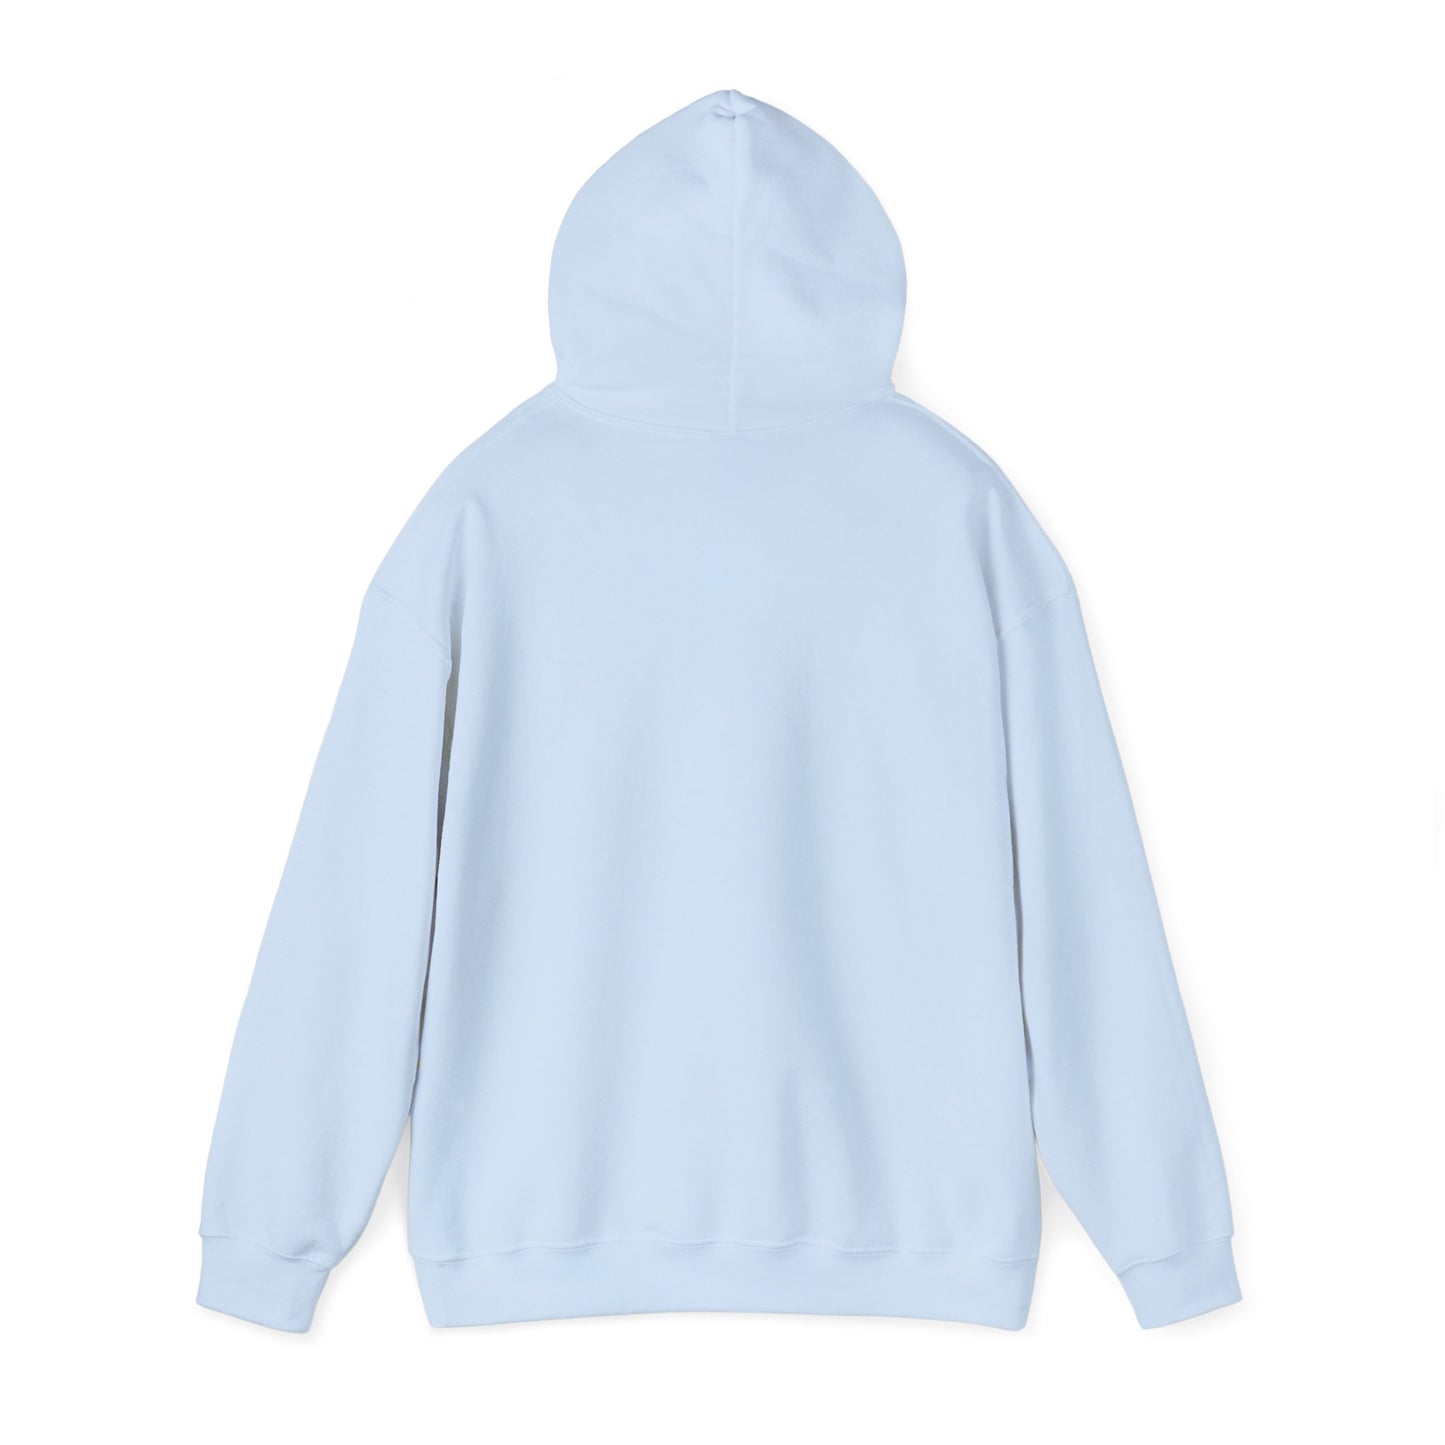 "Return to Pemberley" Unisex Heavy Blend™ Hooded Sweatshirt